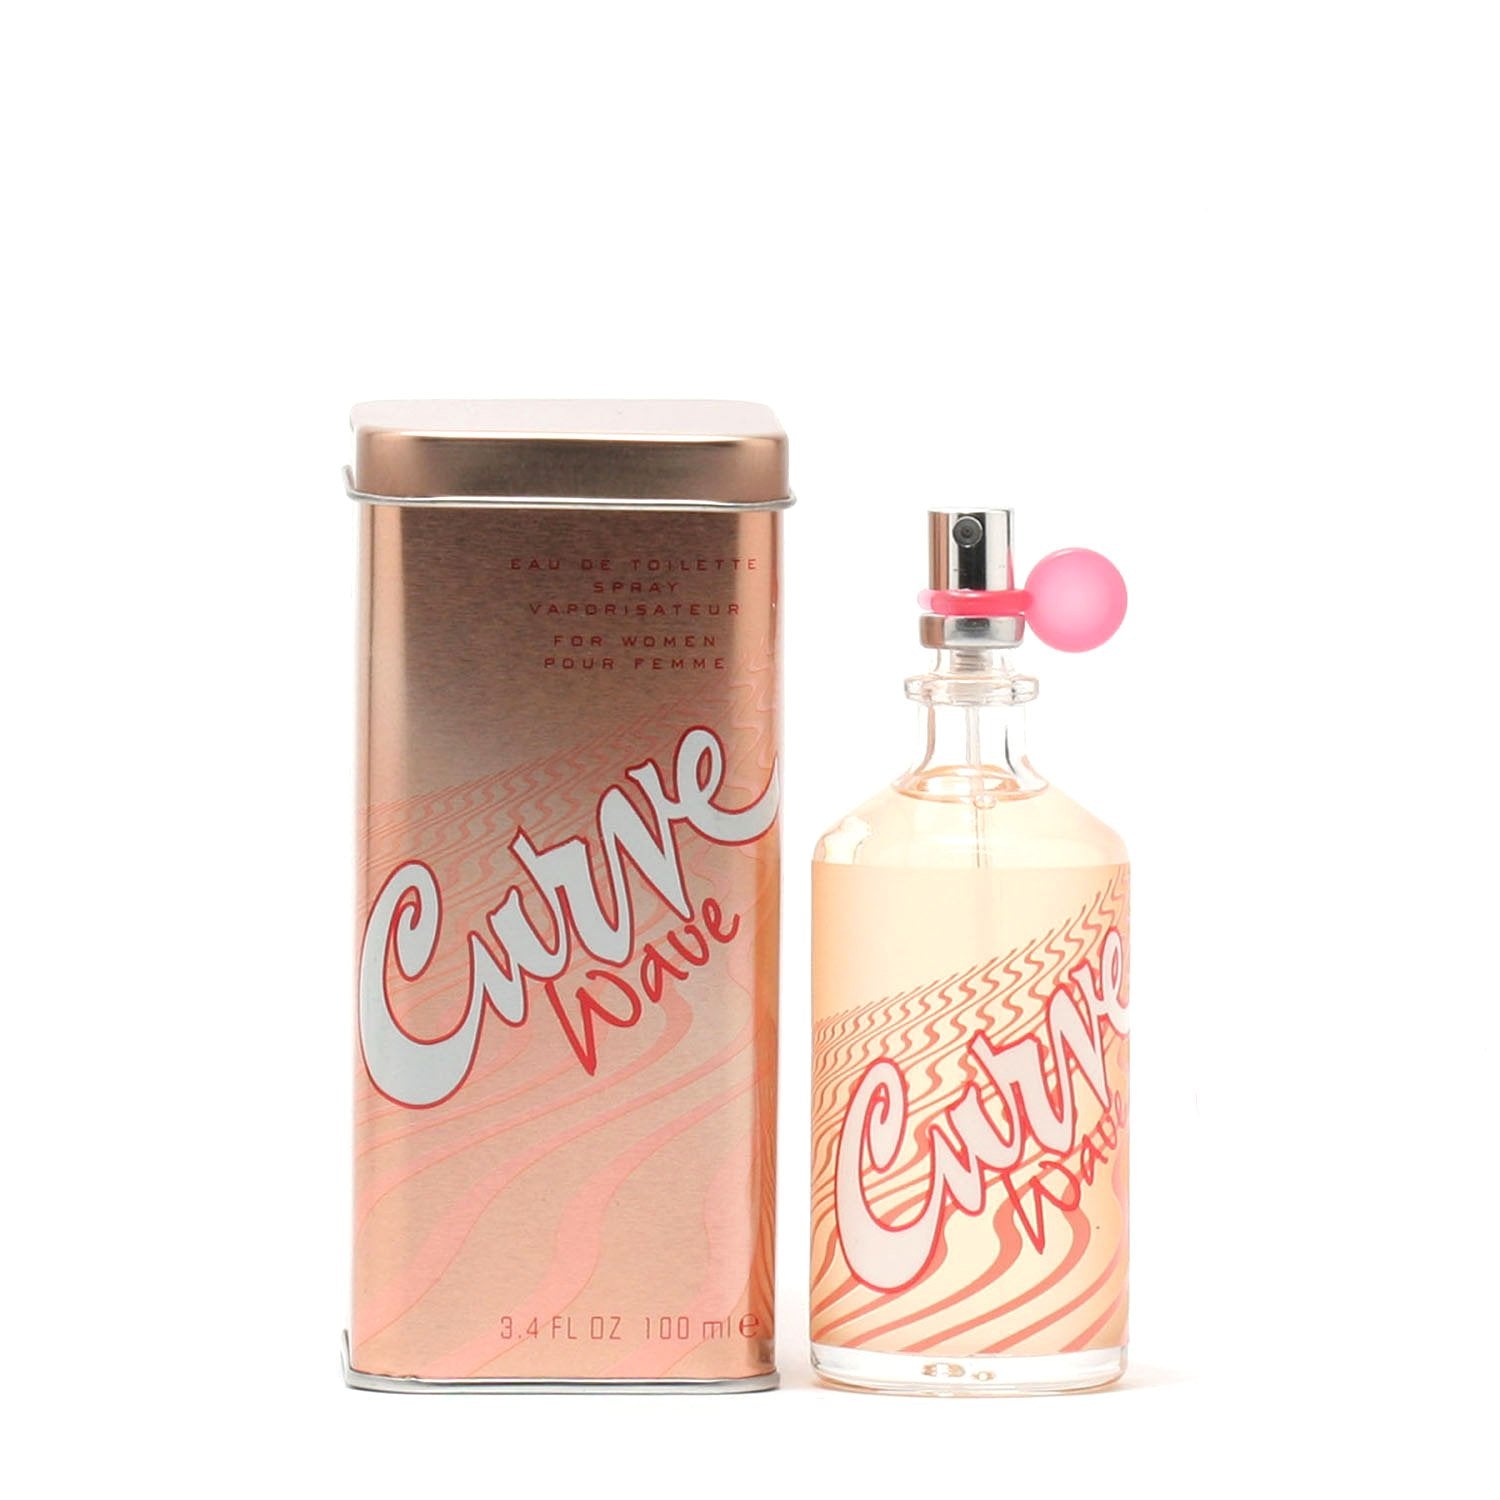 Perfume - CURVE WAVE FOR WOMEN BY LIZ CLAIBORNE - EAU DE TOILETTE SPRAY, 3.4 OZ